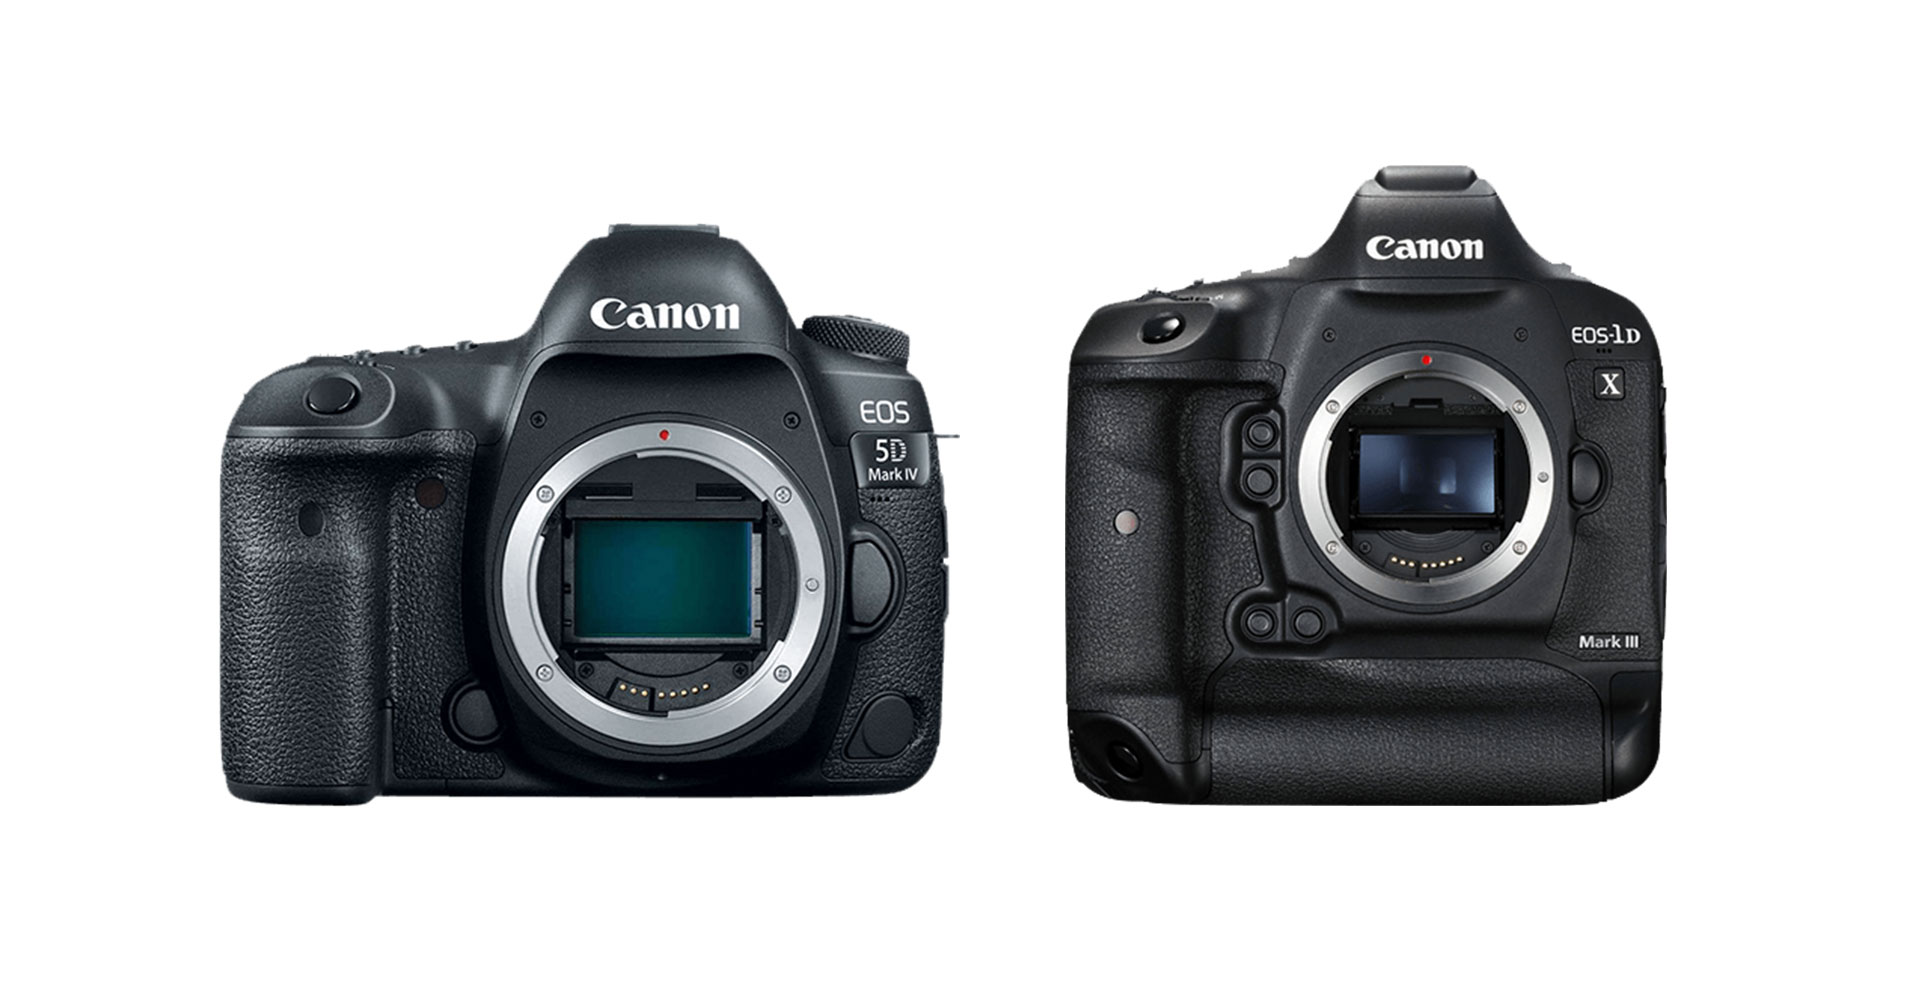 Canon ปล่อยเฟิร์มแวร์ใหม่ สำหรับกล้อง EOS 5D Mark IV และ EOS-1D X Mark II